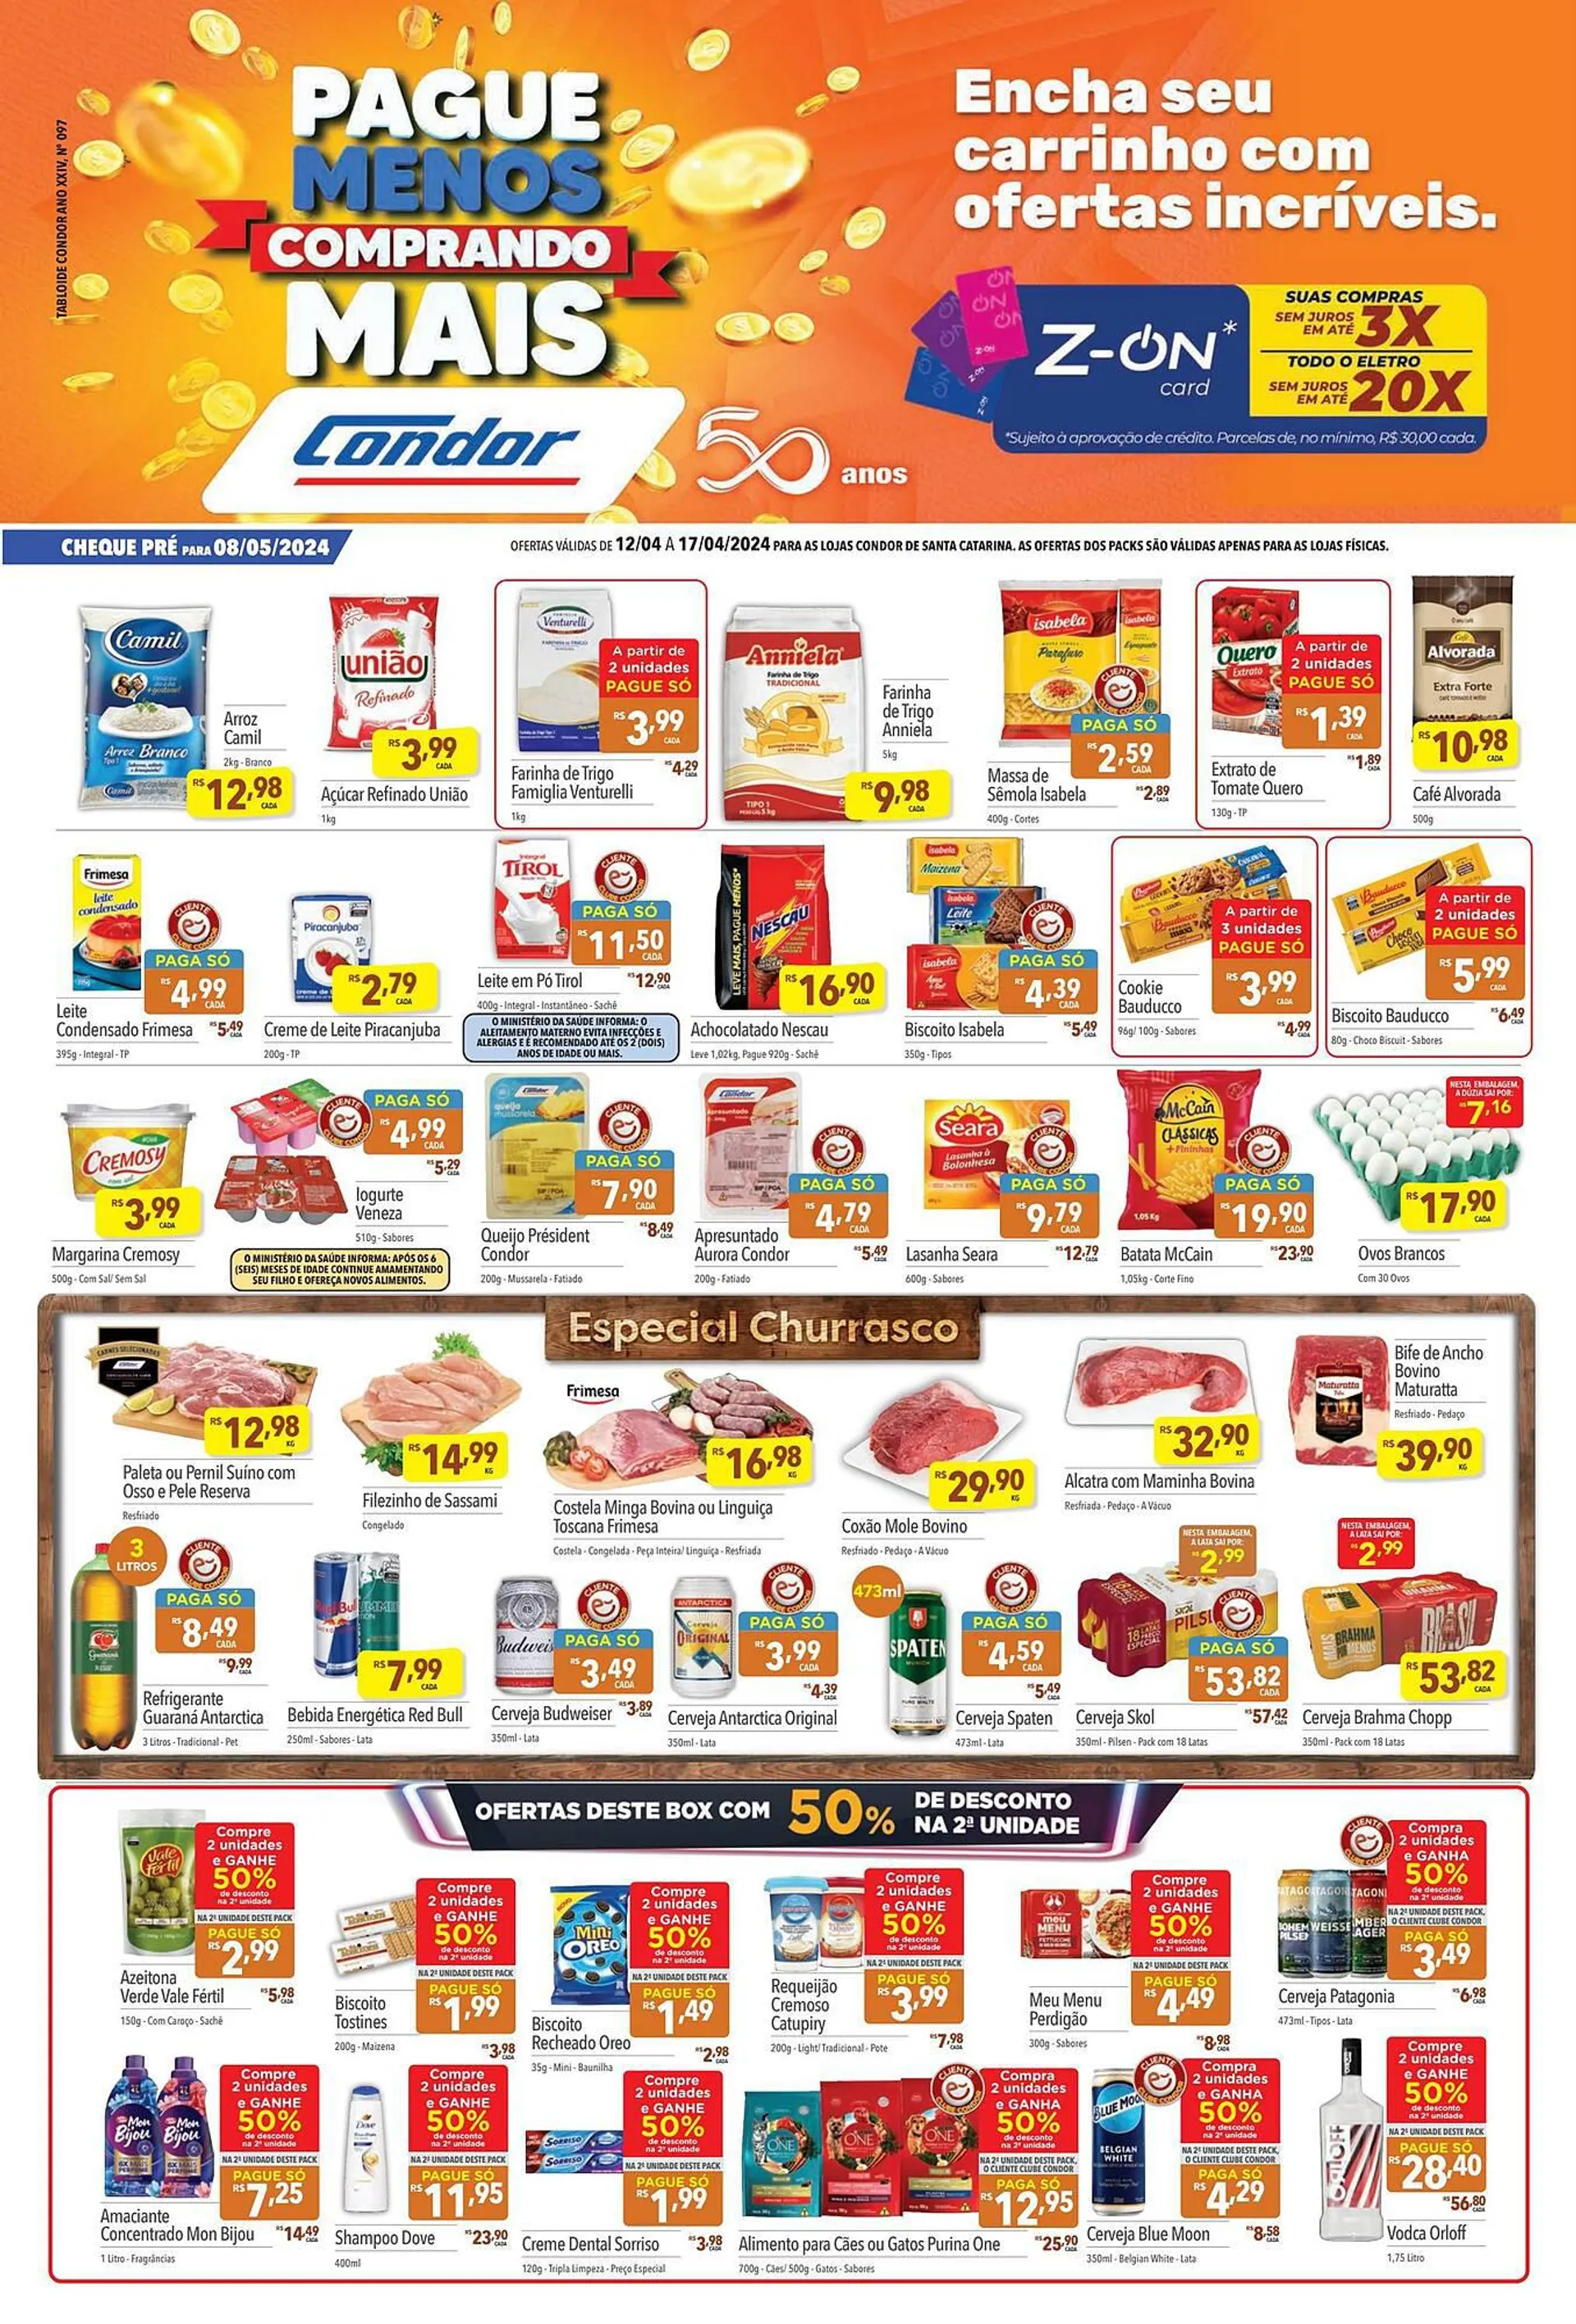 Encarte de Catálogo Supermercados Condor 12 de abril até 17 de abril 2024 - Pagina 1